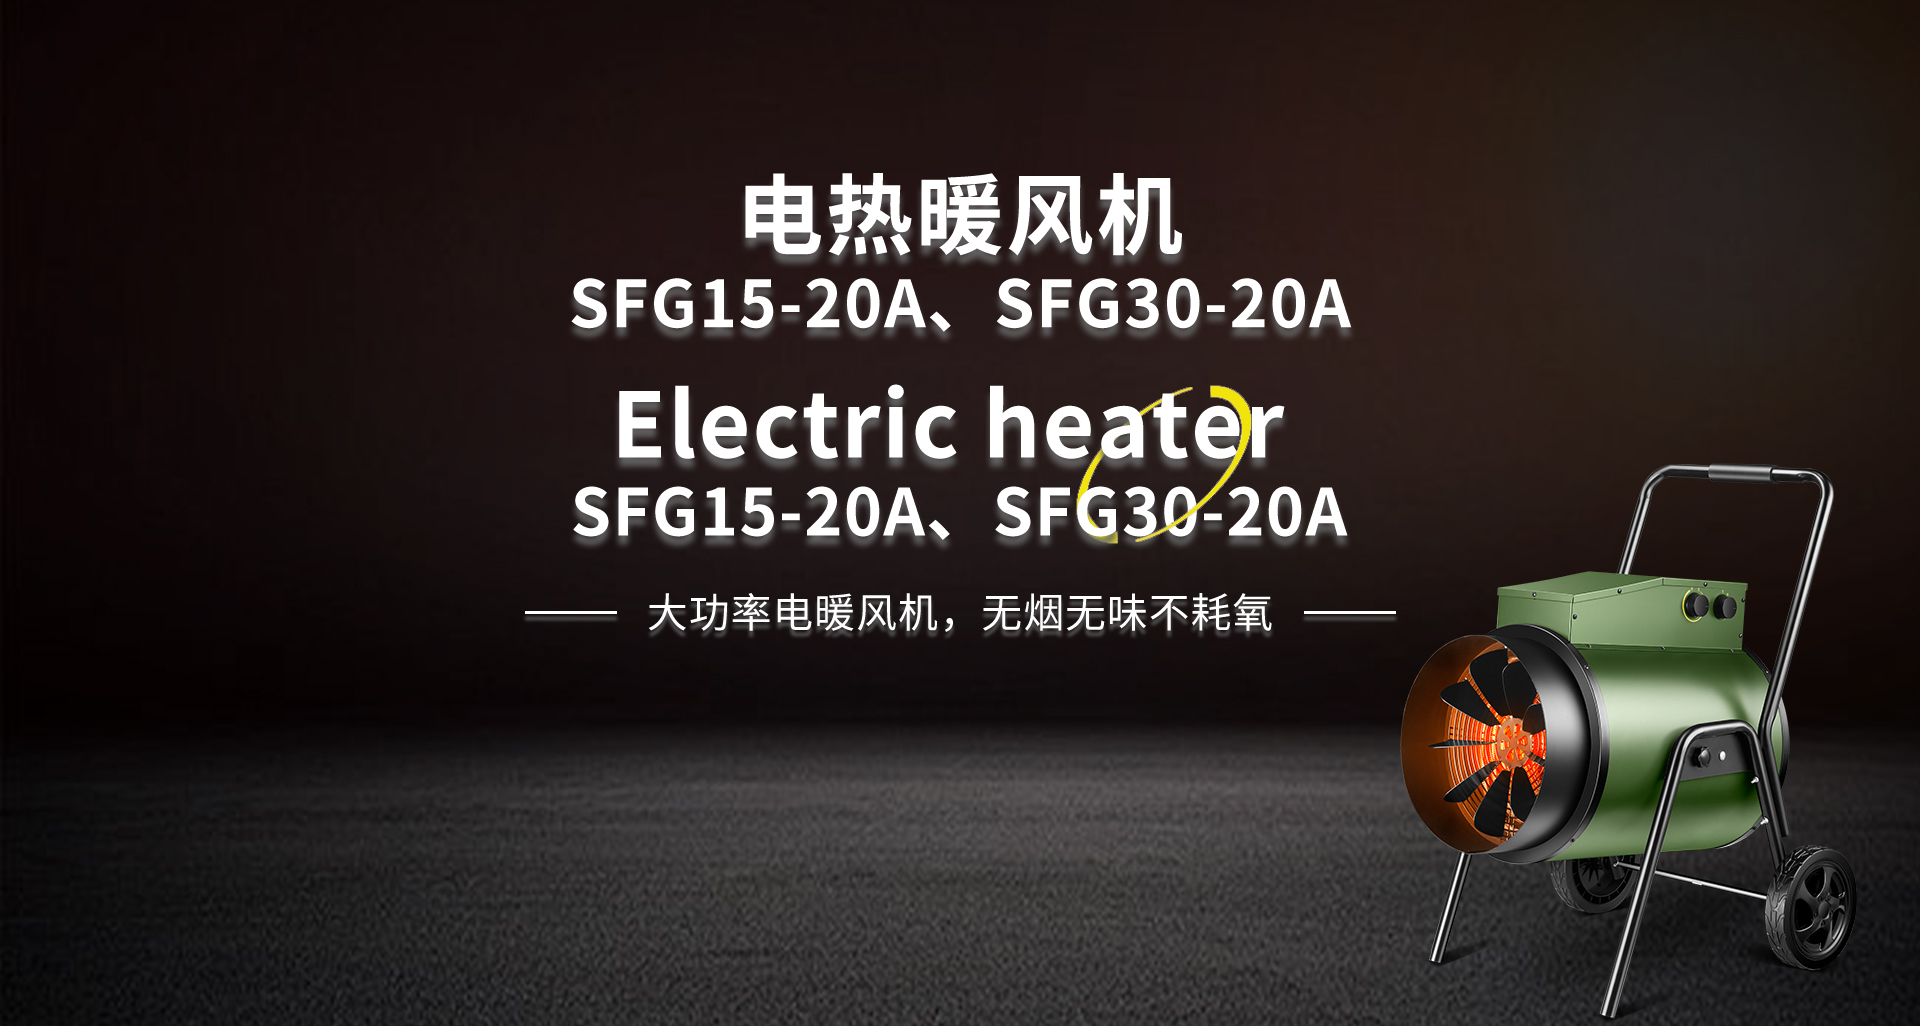 电热暖风机SFG15-20A、SFG30-20A.jpg